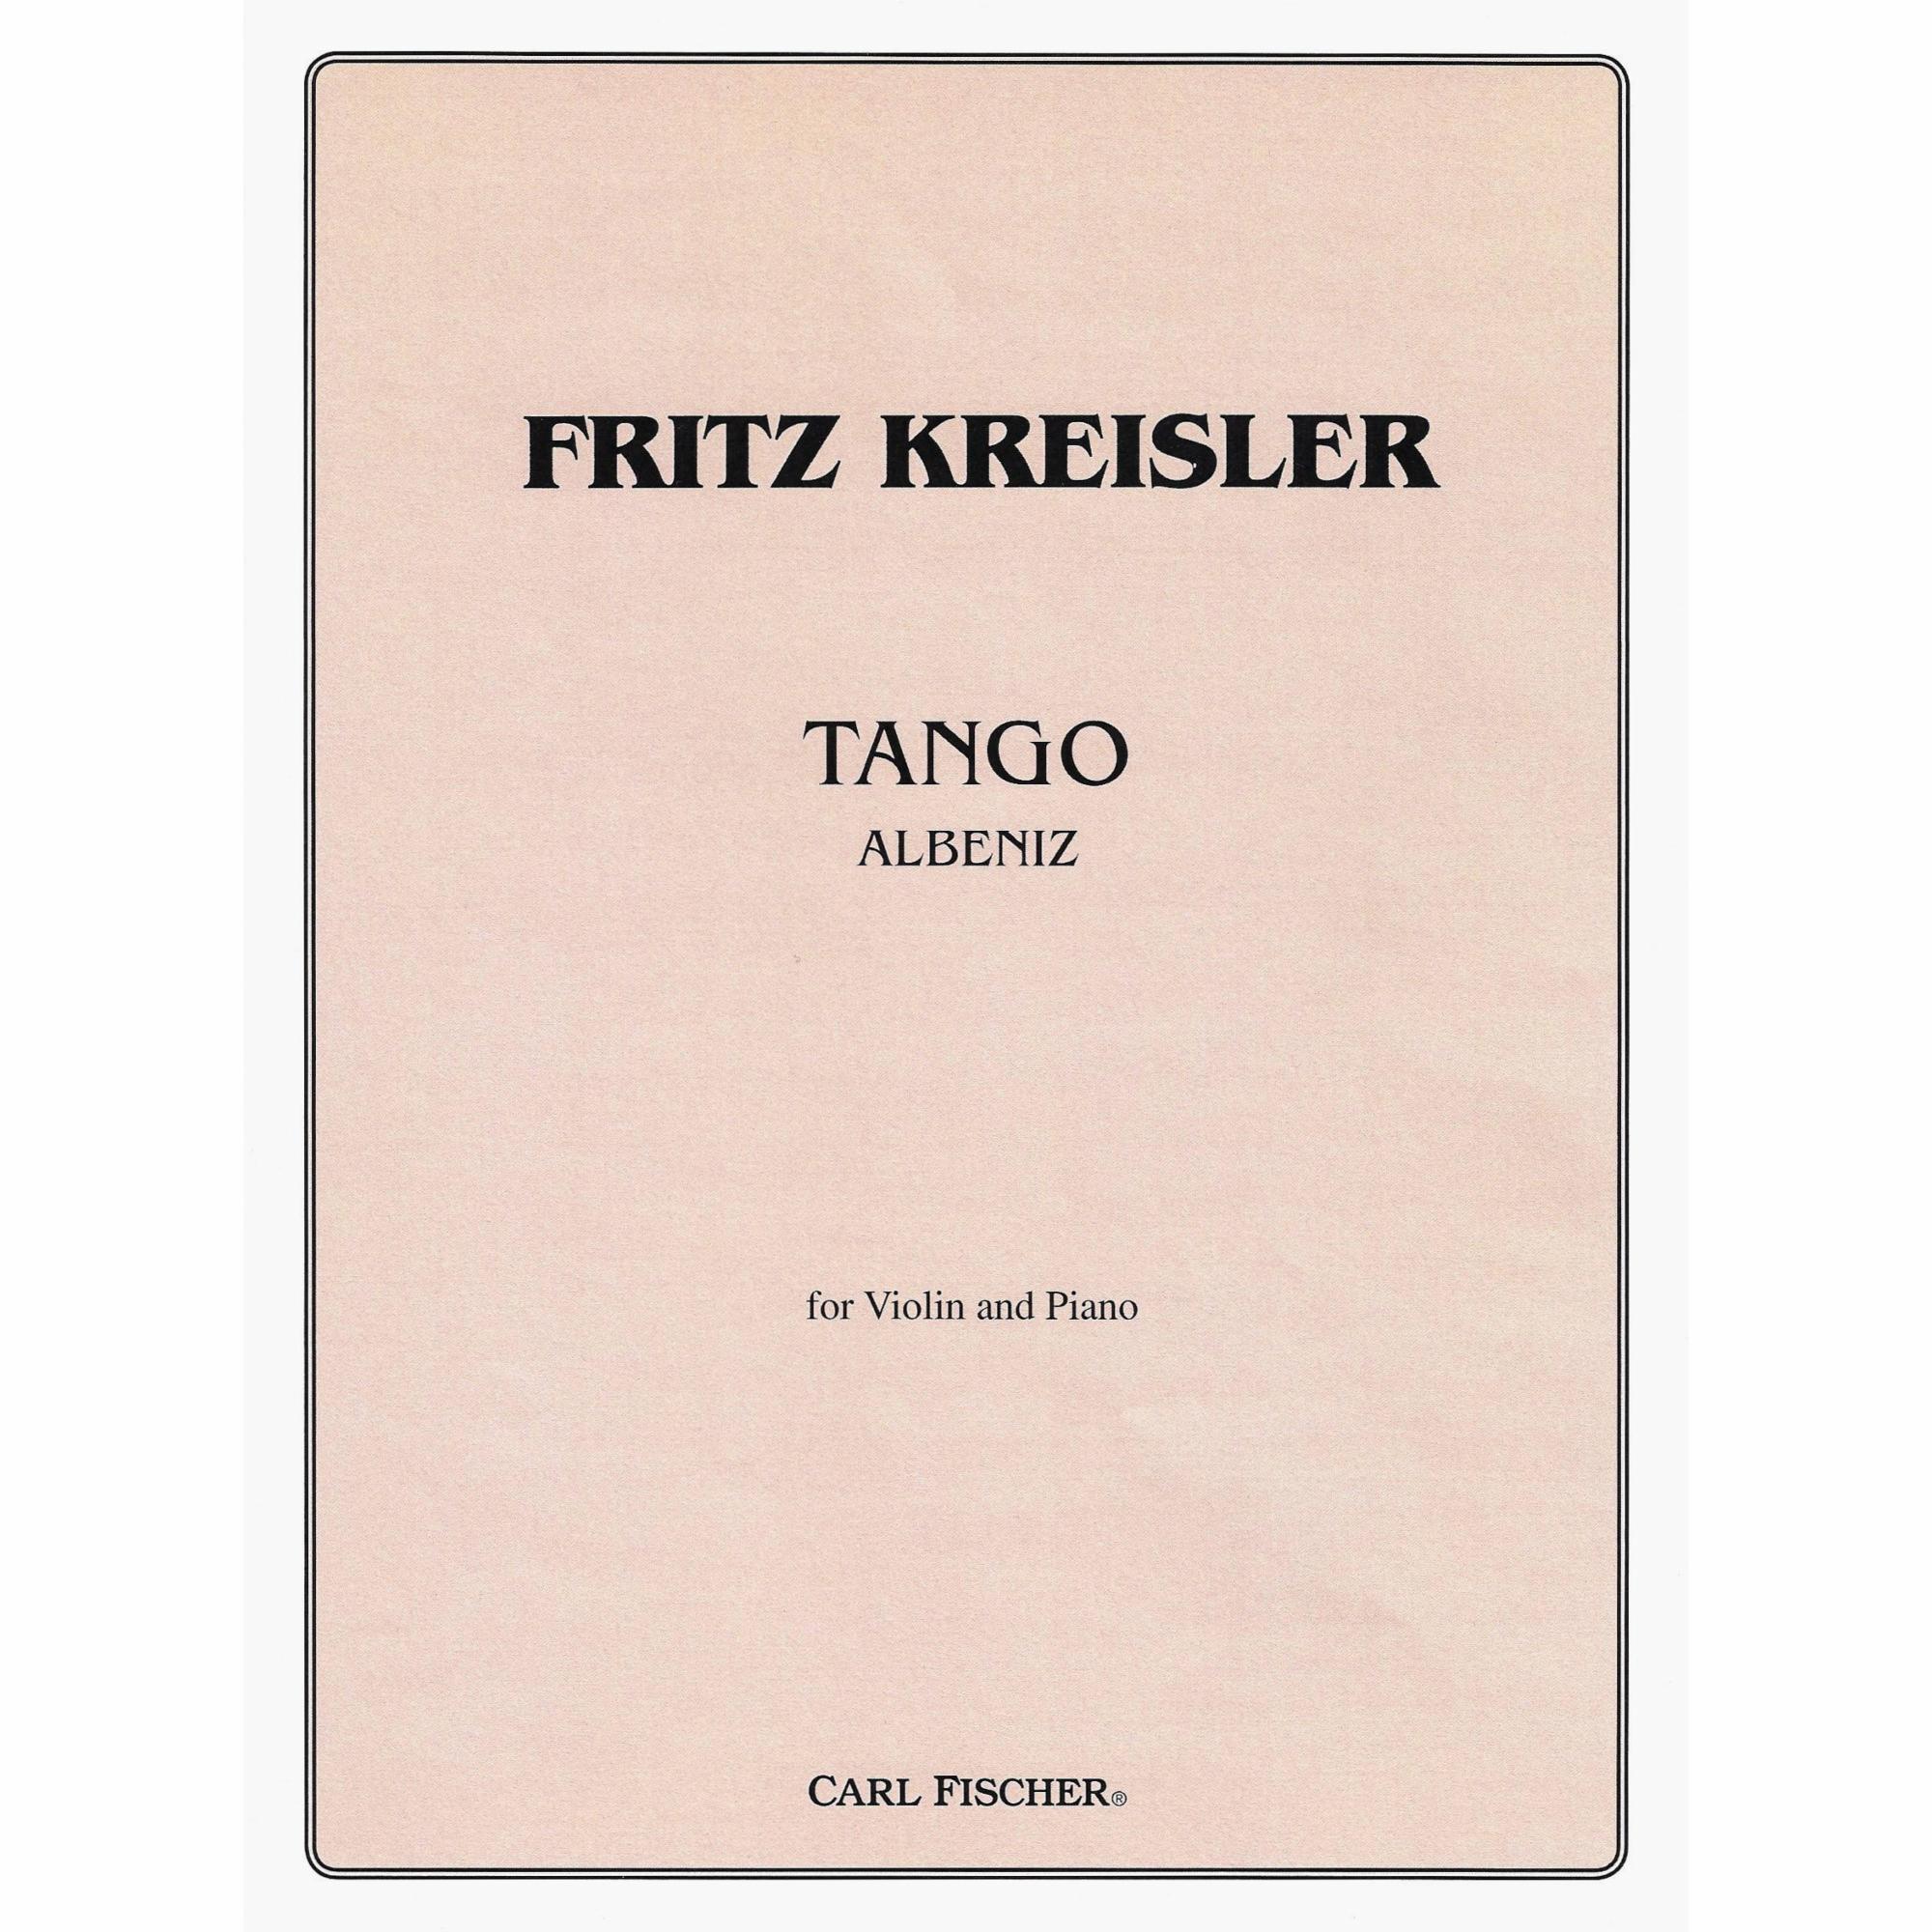 Albeniz -- Tango for Violin and Piano